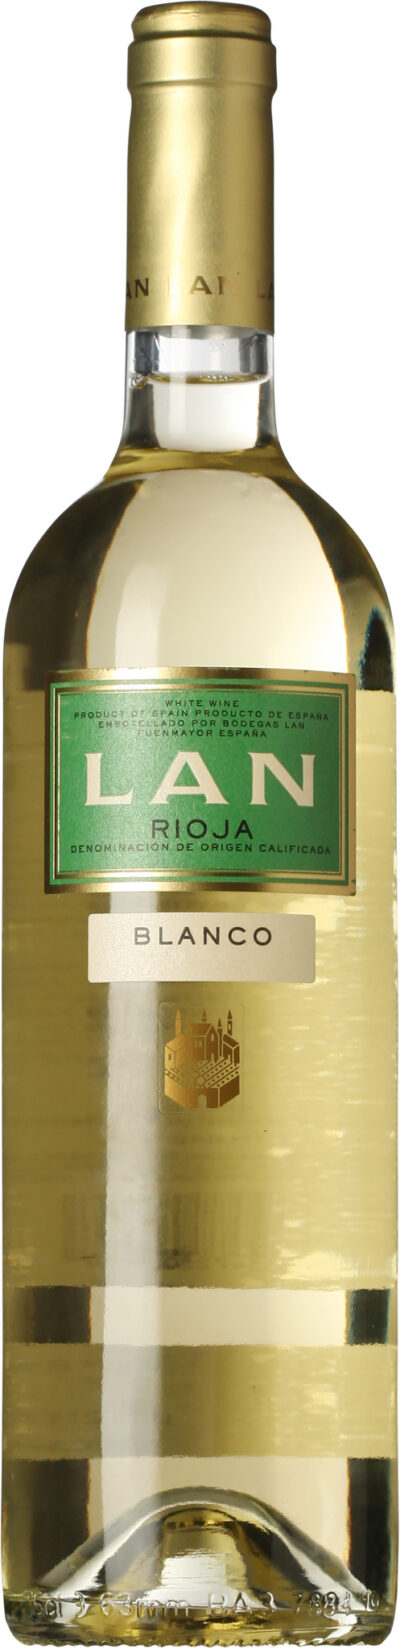 Lan Rioja Blanco